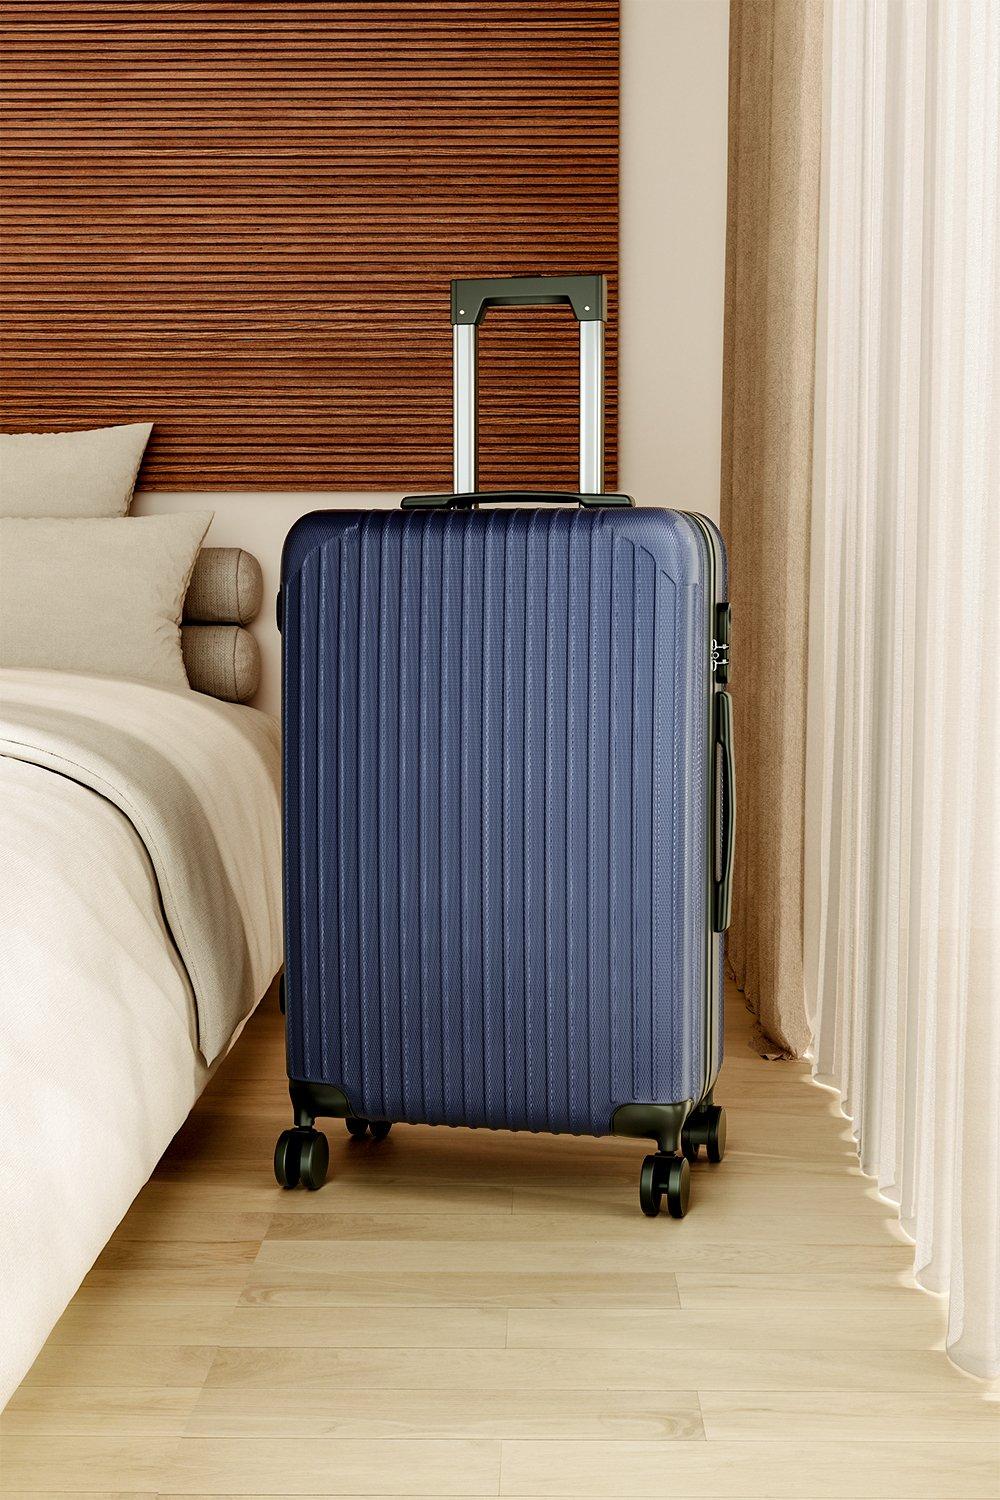 Hardshell Spinner Wheel Luggage Travel Suitcase, 28